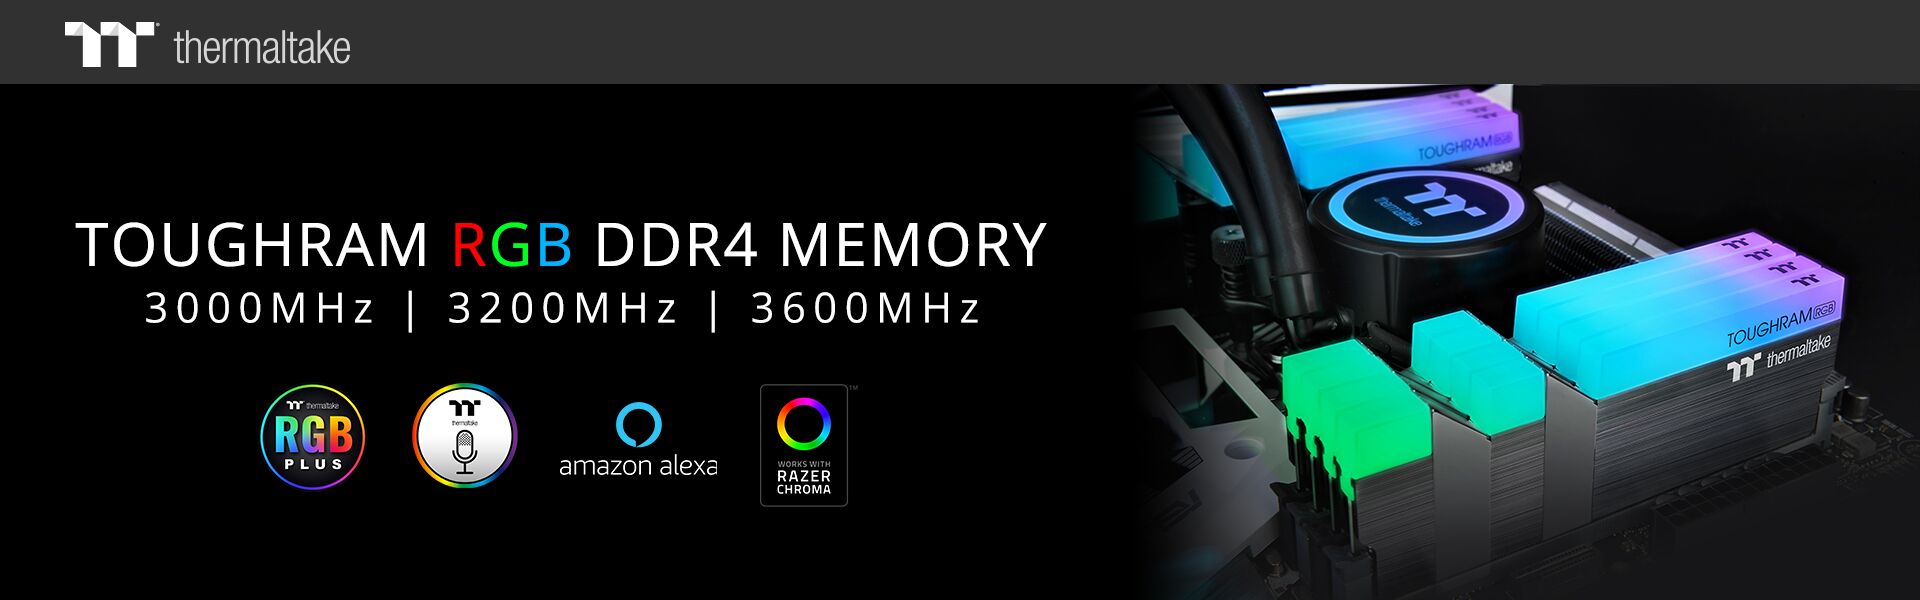 Thermaltake meluncurkan memori TOUGHRAM RGB DDR4 3600MHz | 3200MHz | 3000MHz 16GB